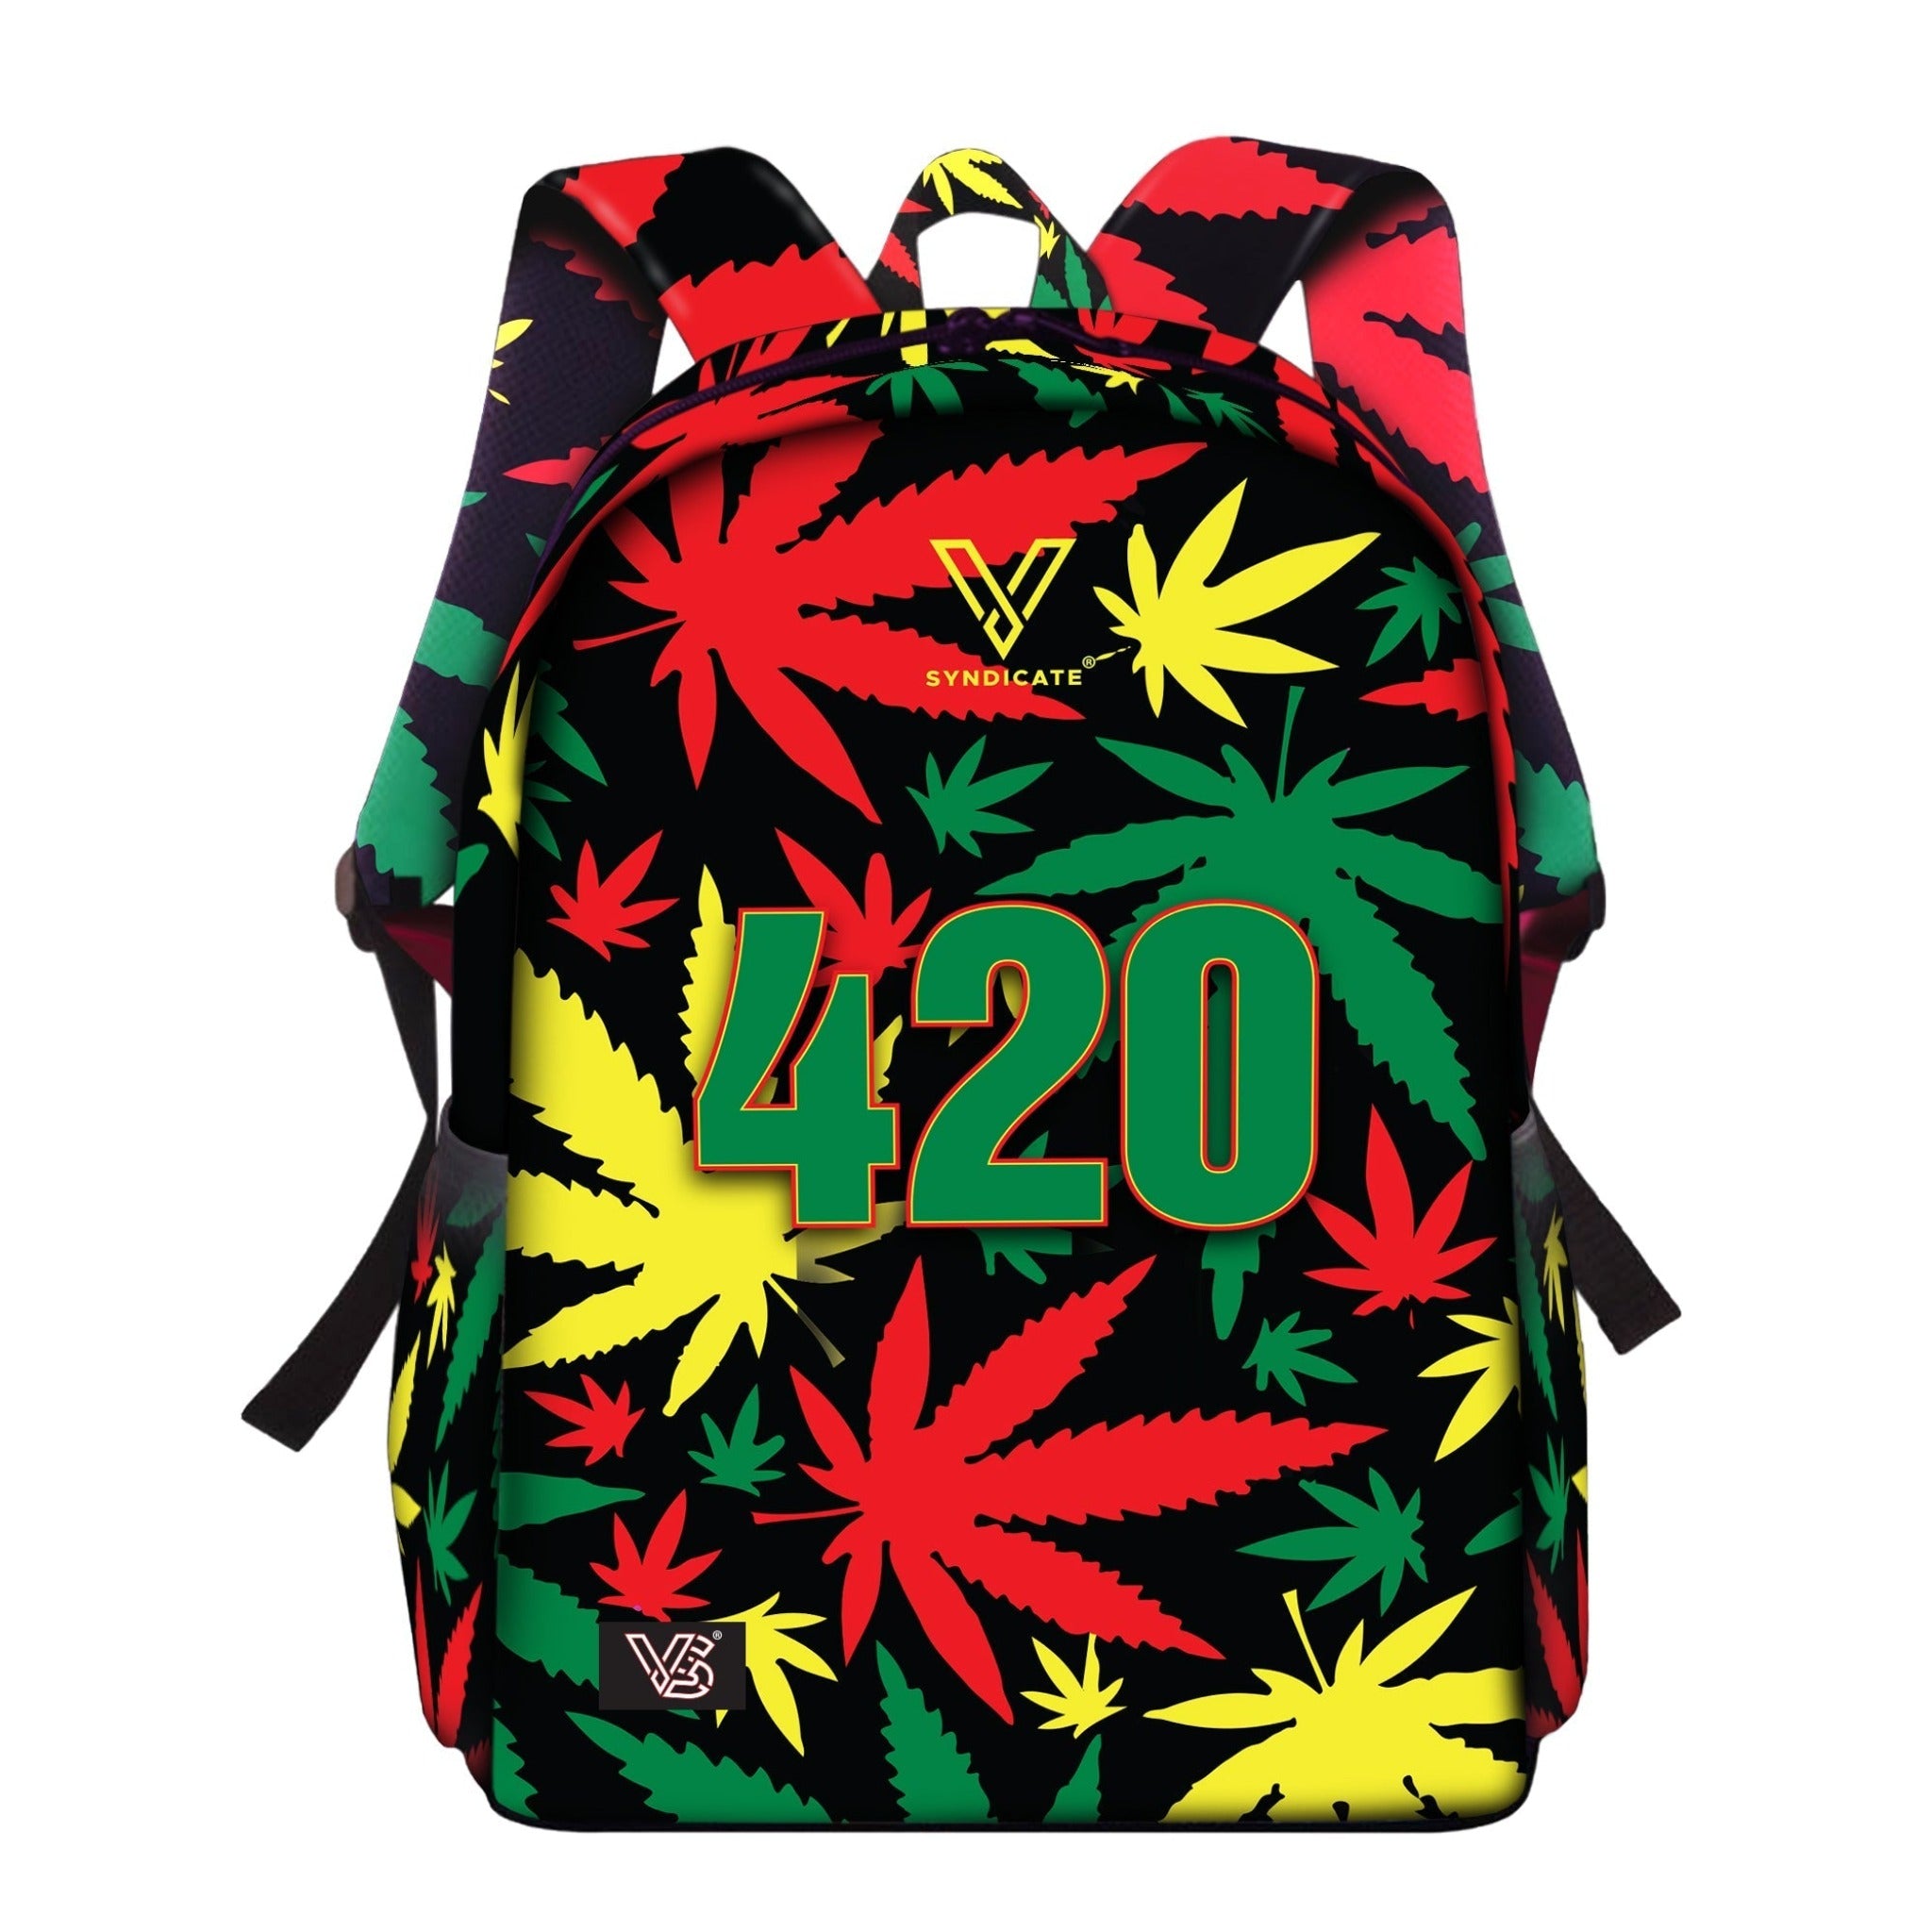 V Syndicate Backpack 420 Rasta